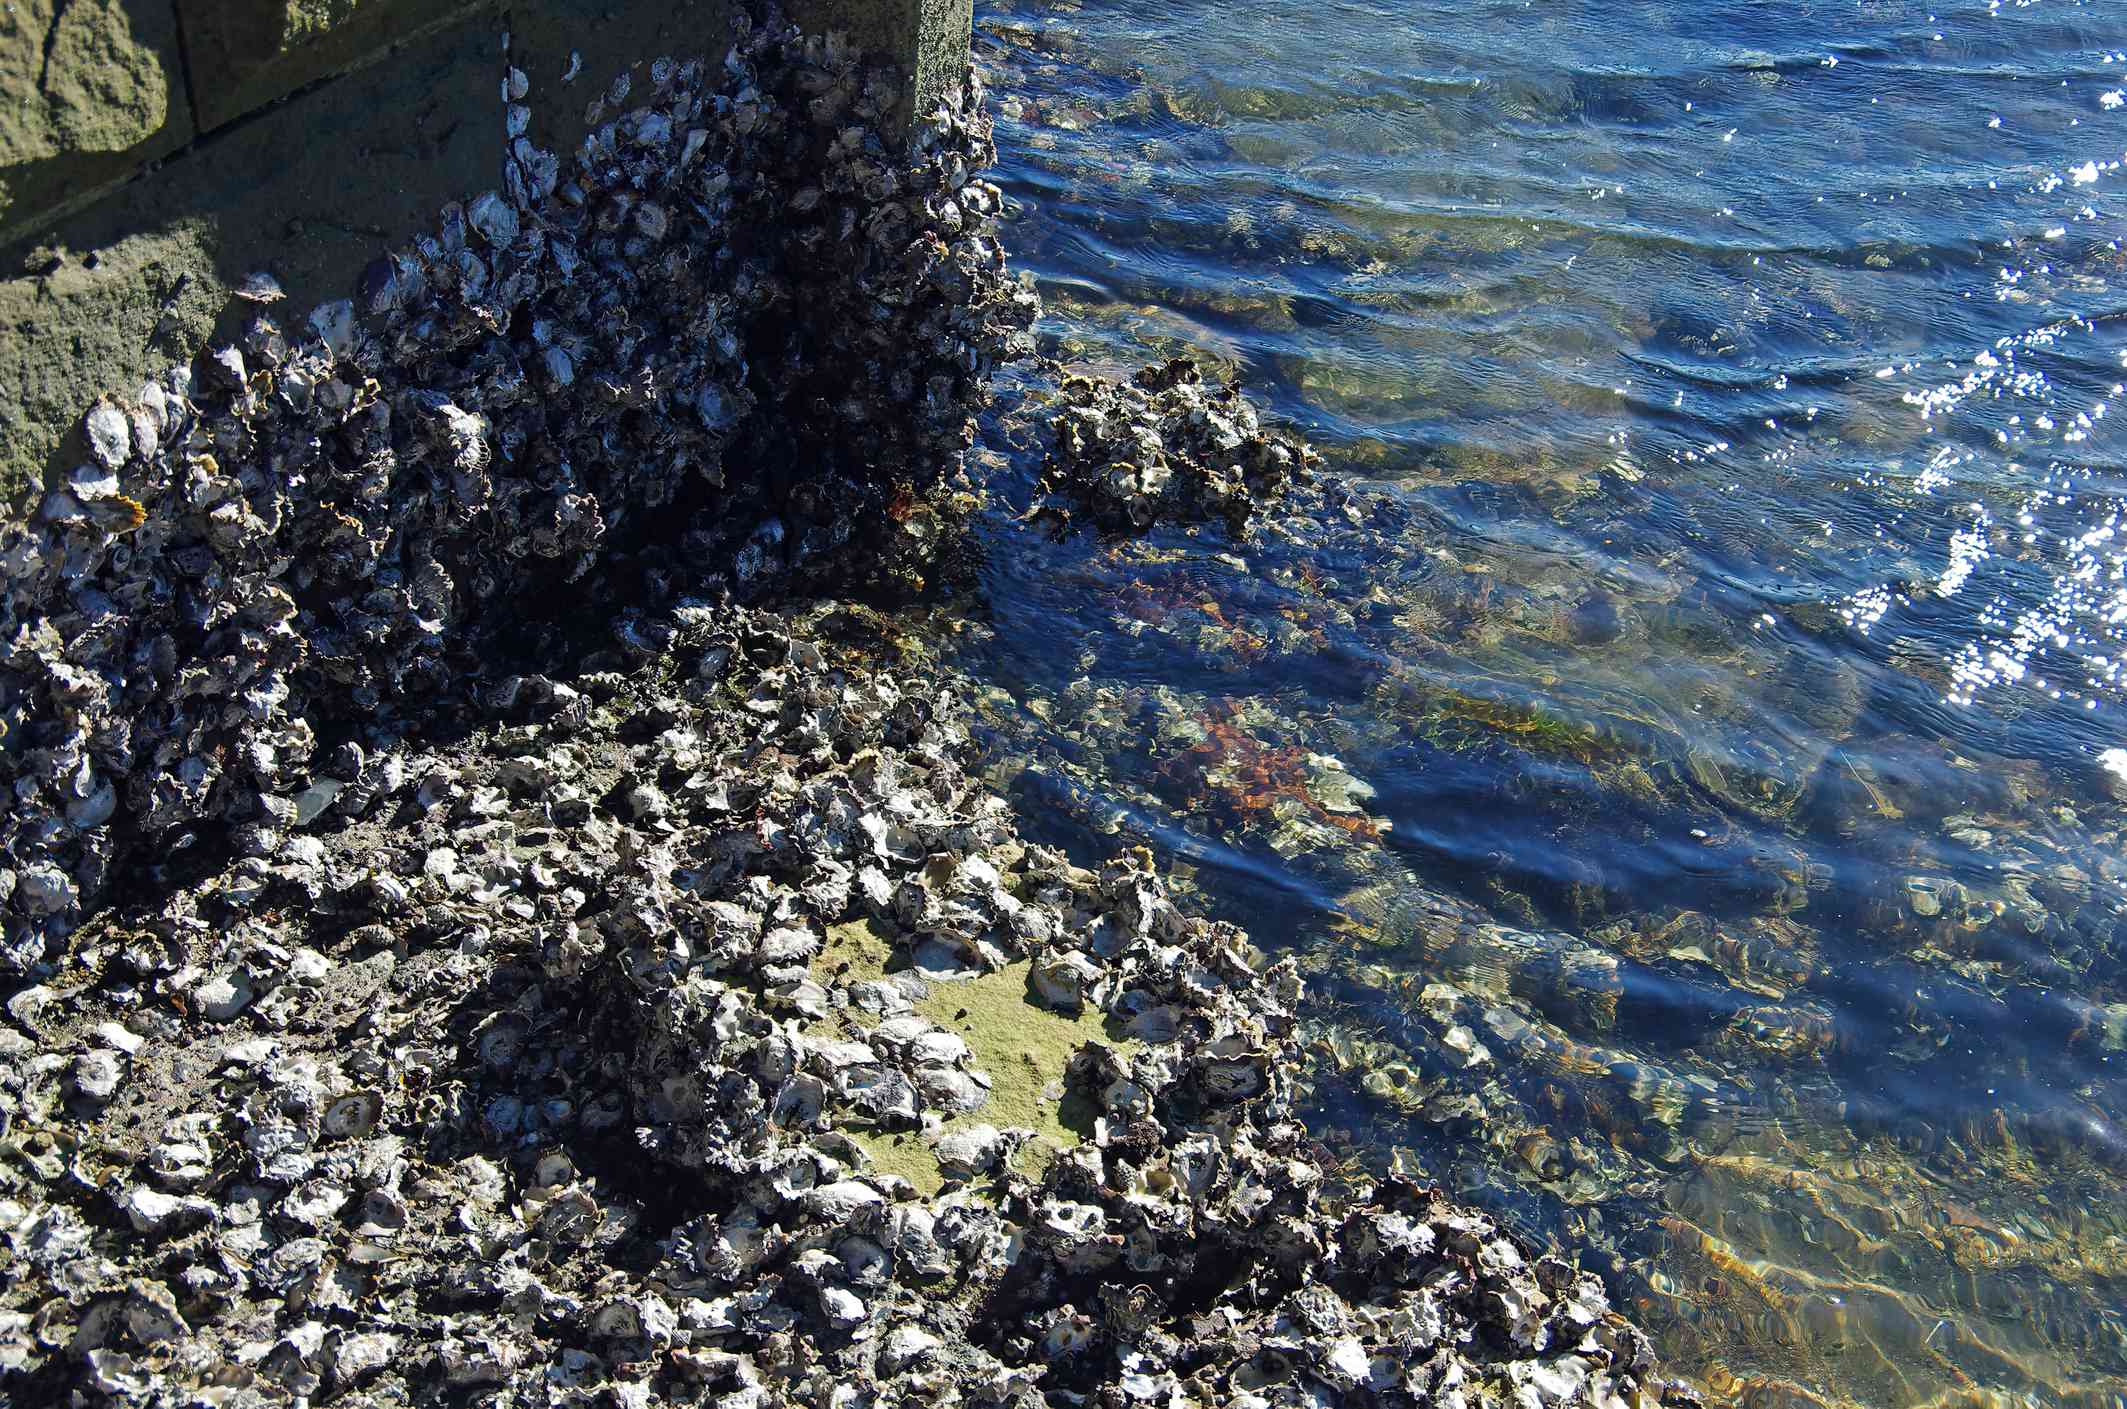 grupos de ostras en las rocas y el fondo marino durante la marea baja